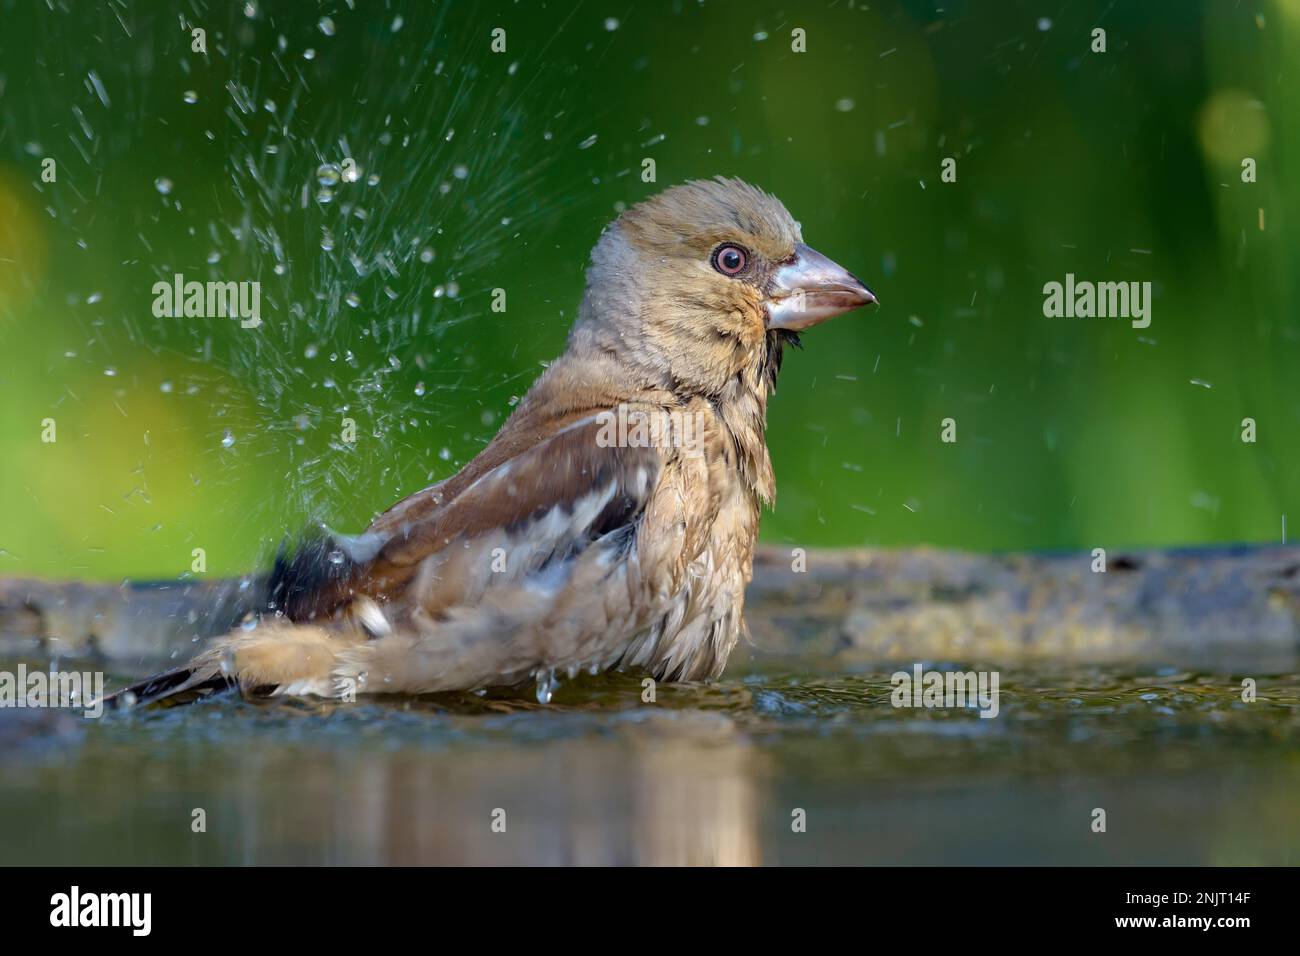 Weibliche Hawfinken (Coccothraustes coccothraustes) baden mit vielen Tropfen und Spritzwasser Stockfoto